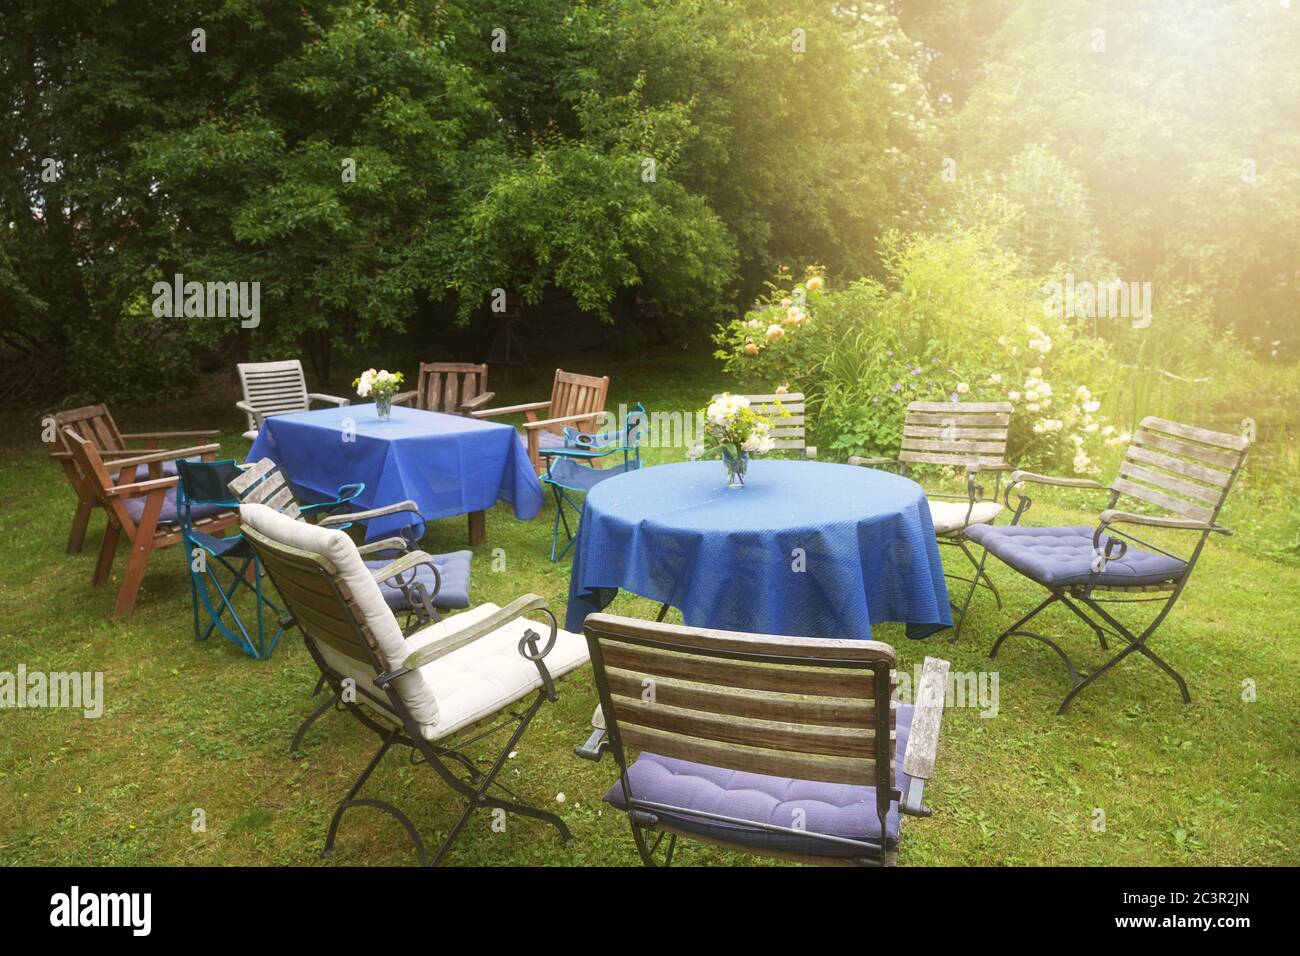 Richten Sie sich für eine private Gartenparty mit Tischen, blauen Tischdecken und vielen verschiedenen Stühlen in einem ländlichen Hinterhof in goldenen späten Nachmittag Sonnenlicht, selec Stockfoto